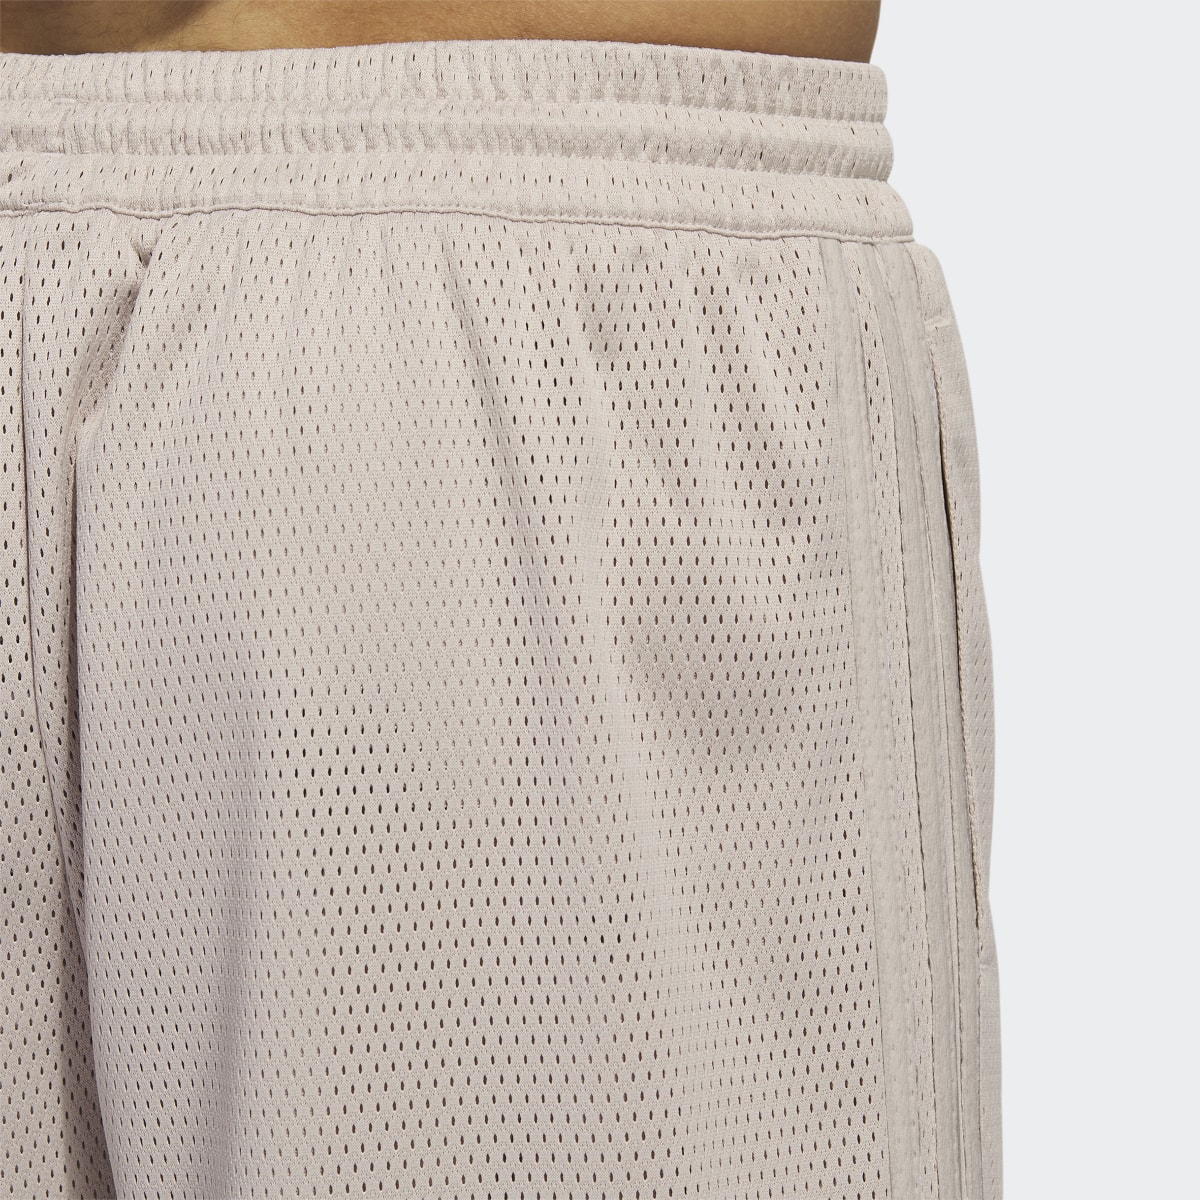 Adidas Basketball Mesh Shorts. 6